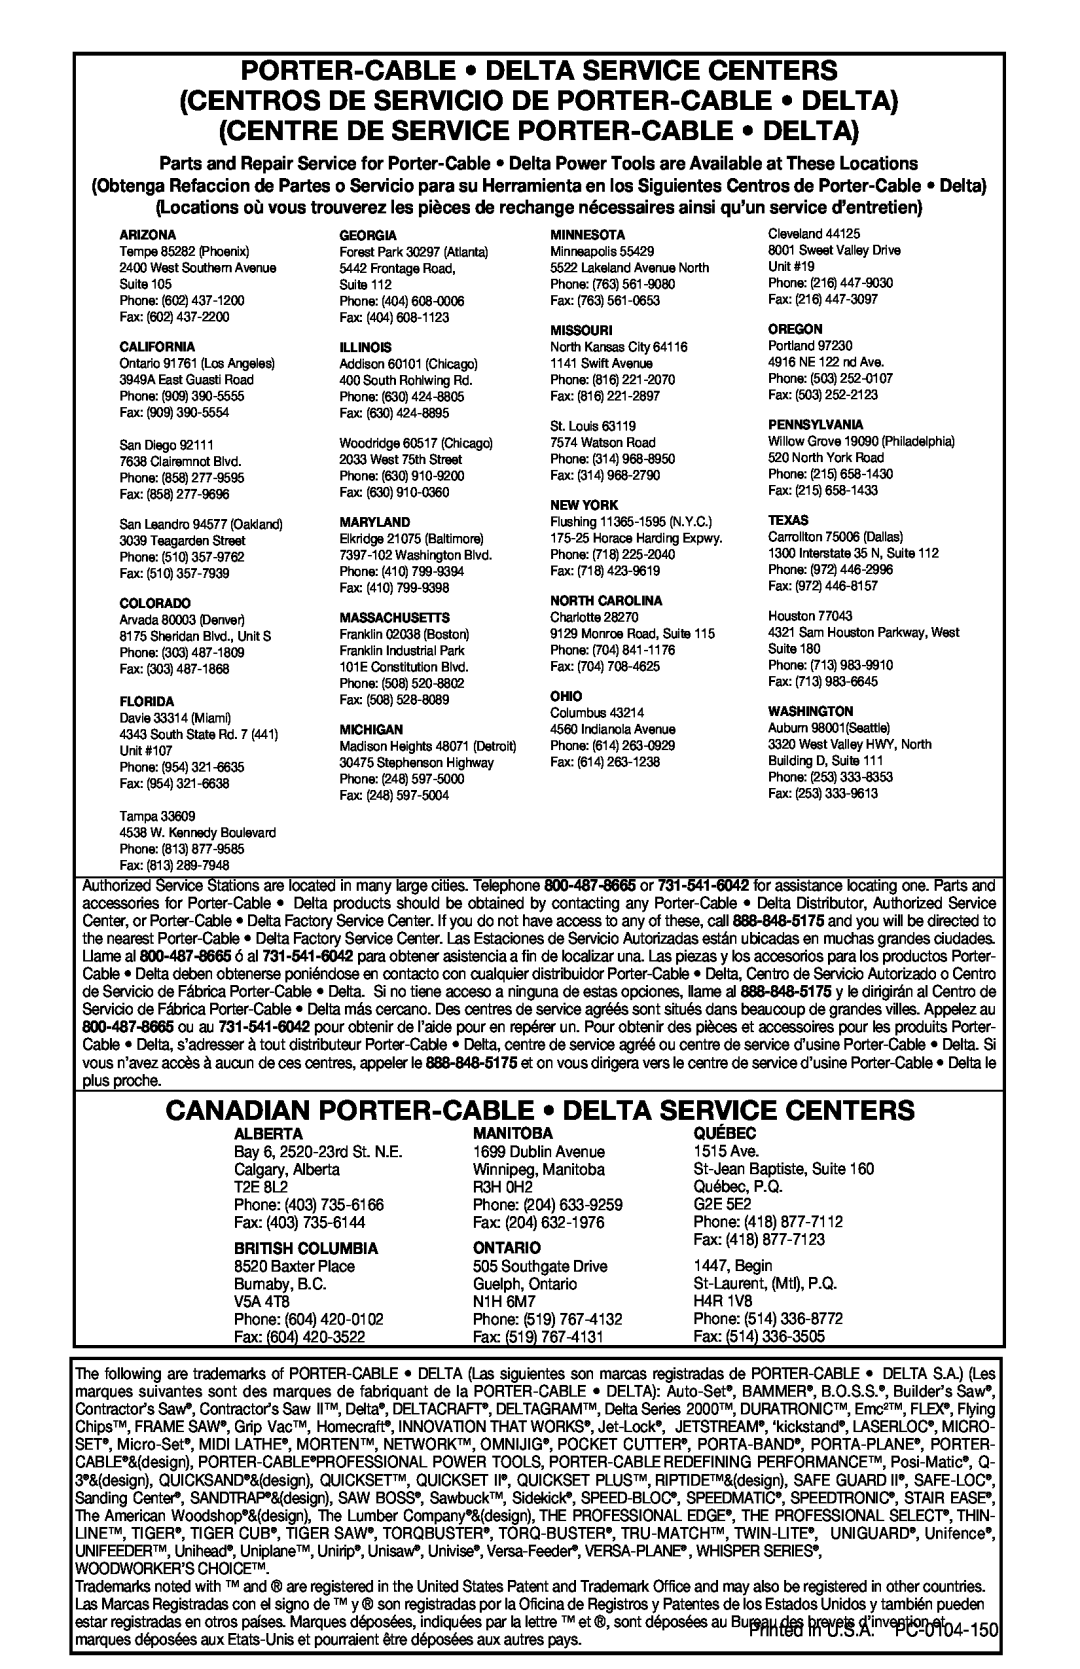 Porter-Cable 424MAG Porter-Cable Delta Service Centers, Centros De Servicio De Porter-Cable Delta, Alberta, Manitoba 